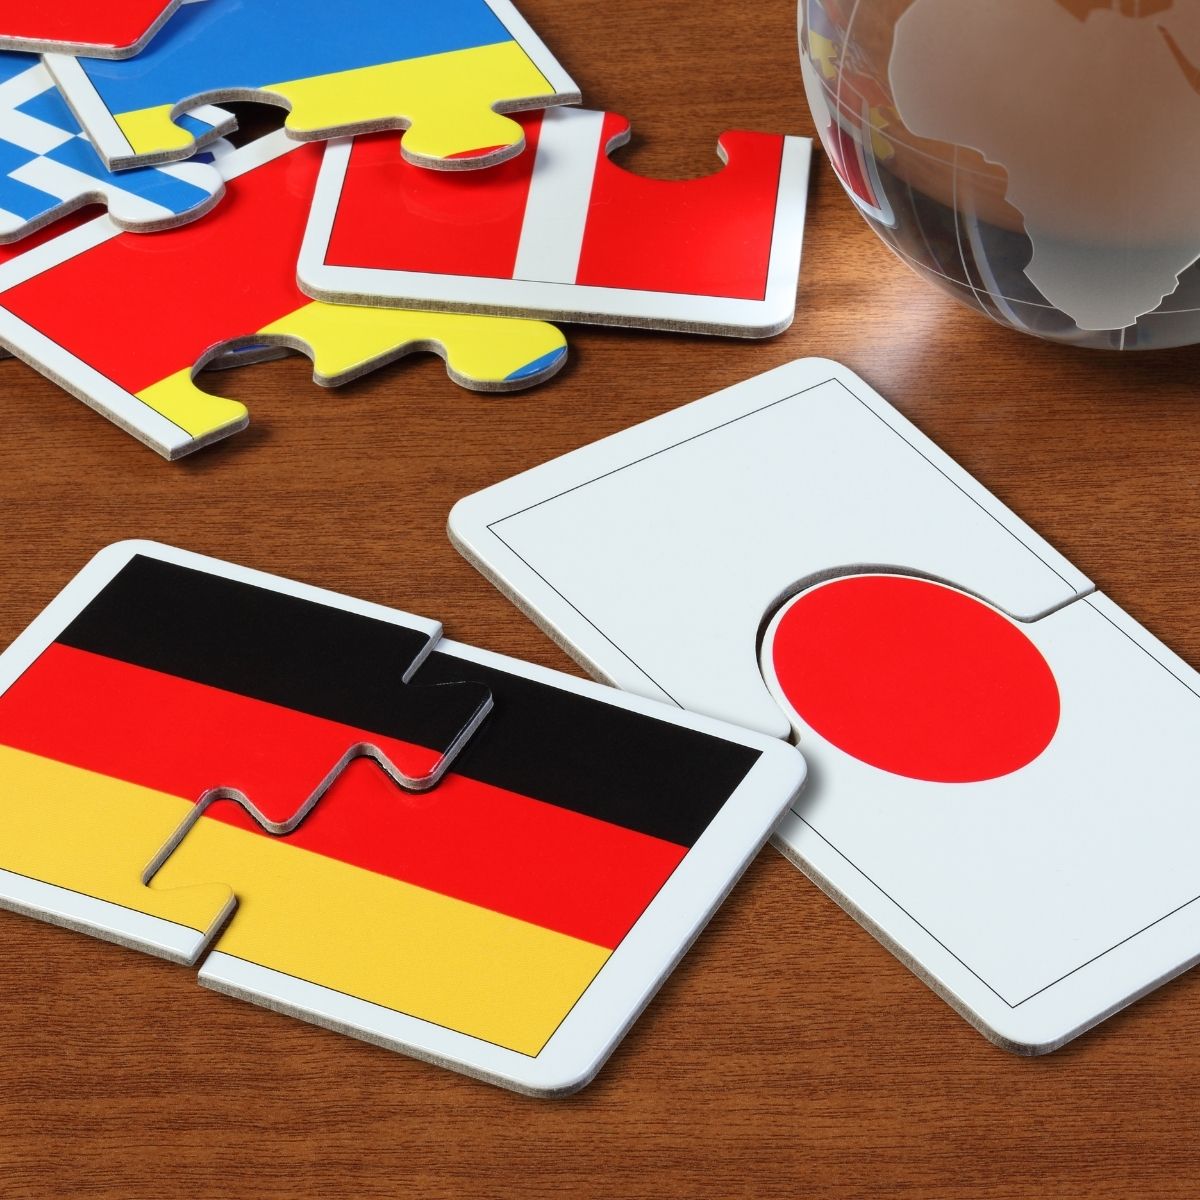 De Japanse en Duitse schaarmerken op een salontafel